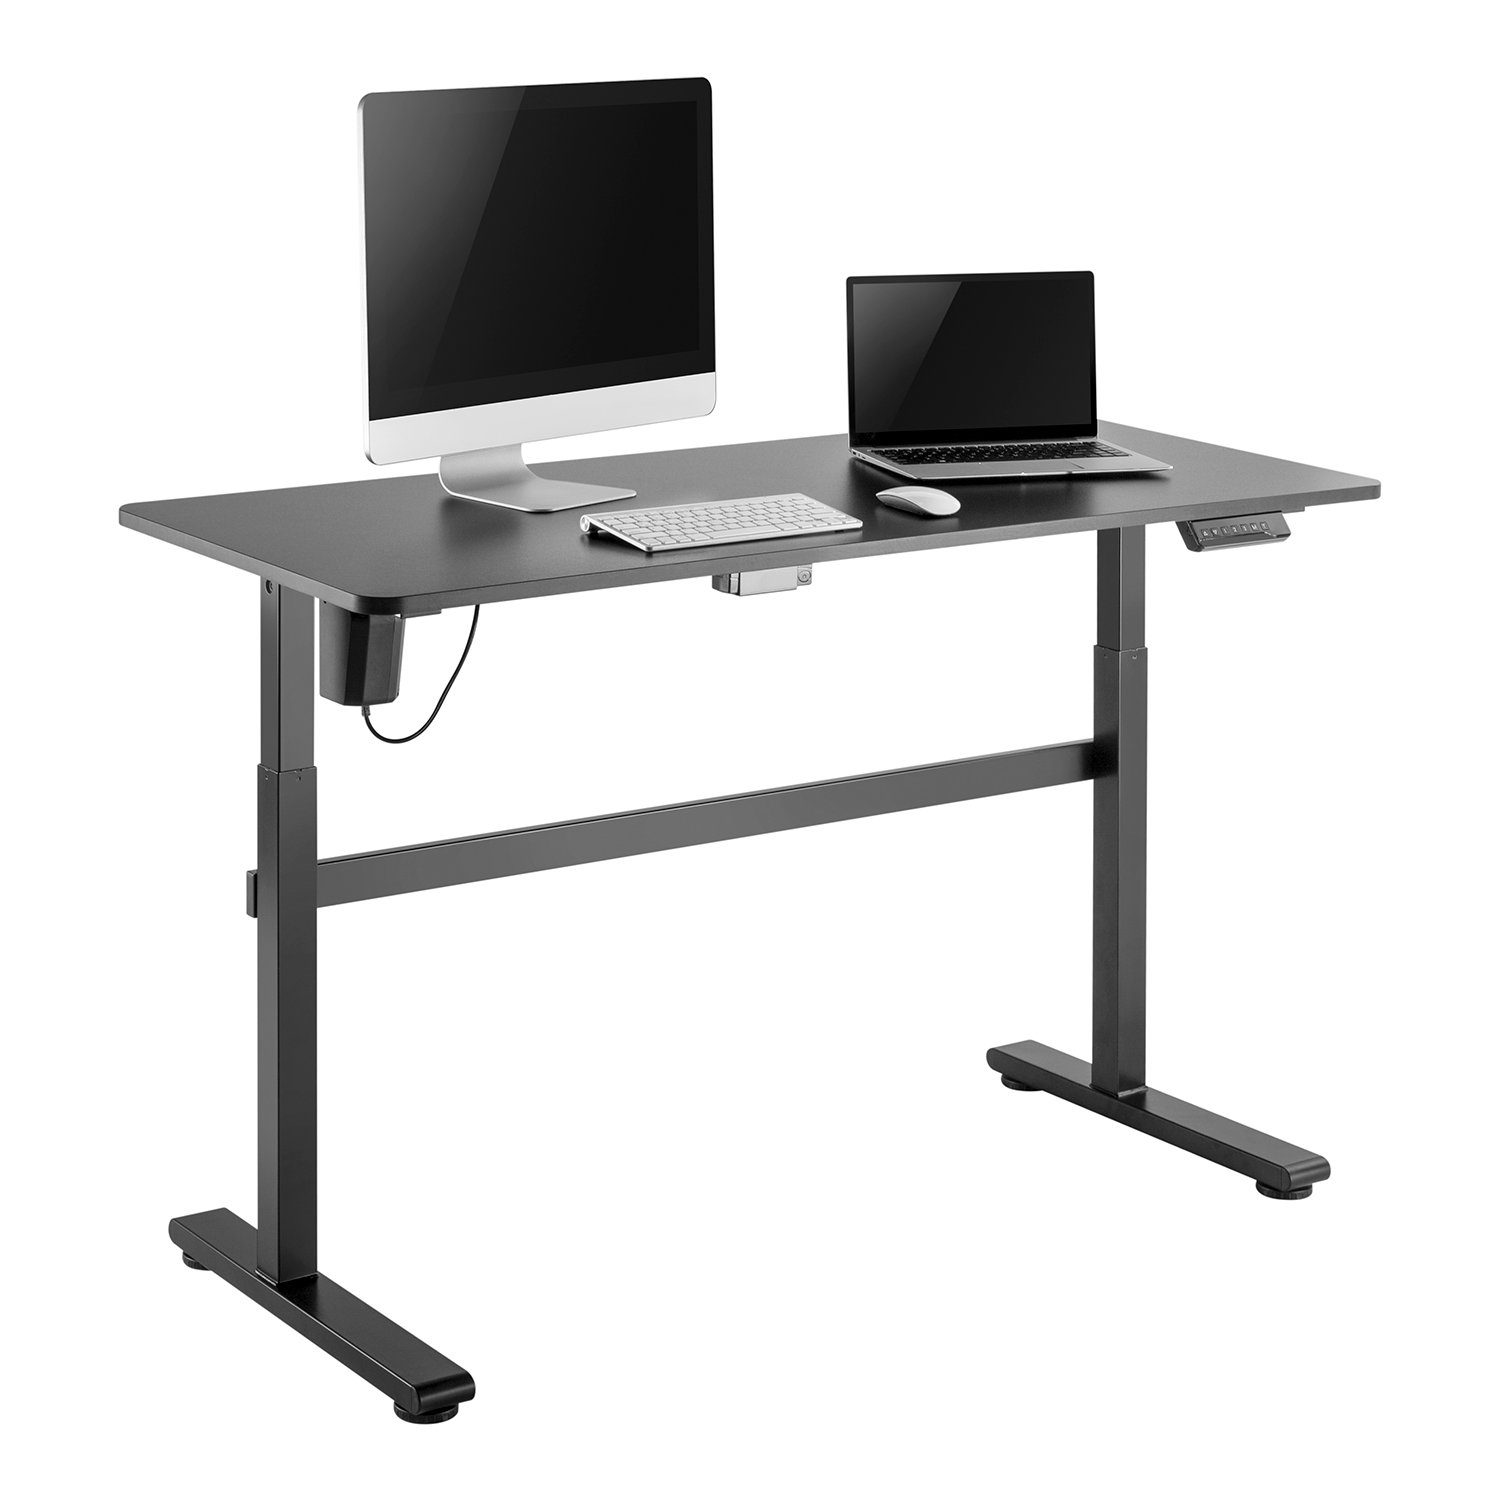 Ergo Office Schreibtisch ER-434, Elektrisch Sitz-Steh-Schreibtisch Höhenverstellbare 140x60cm